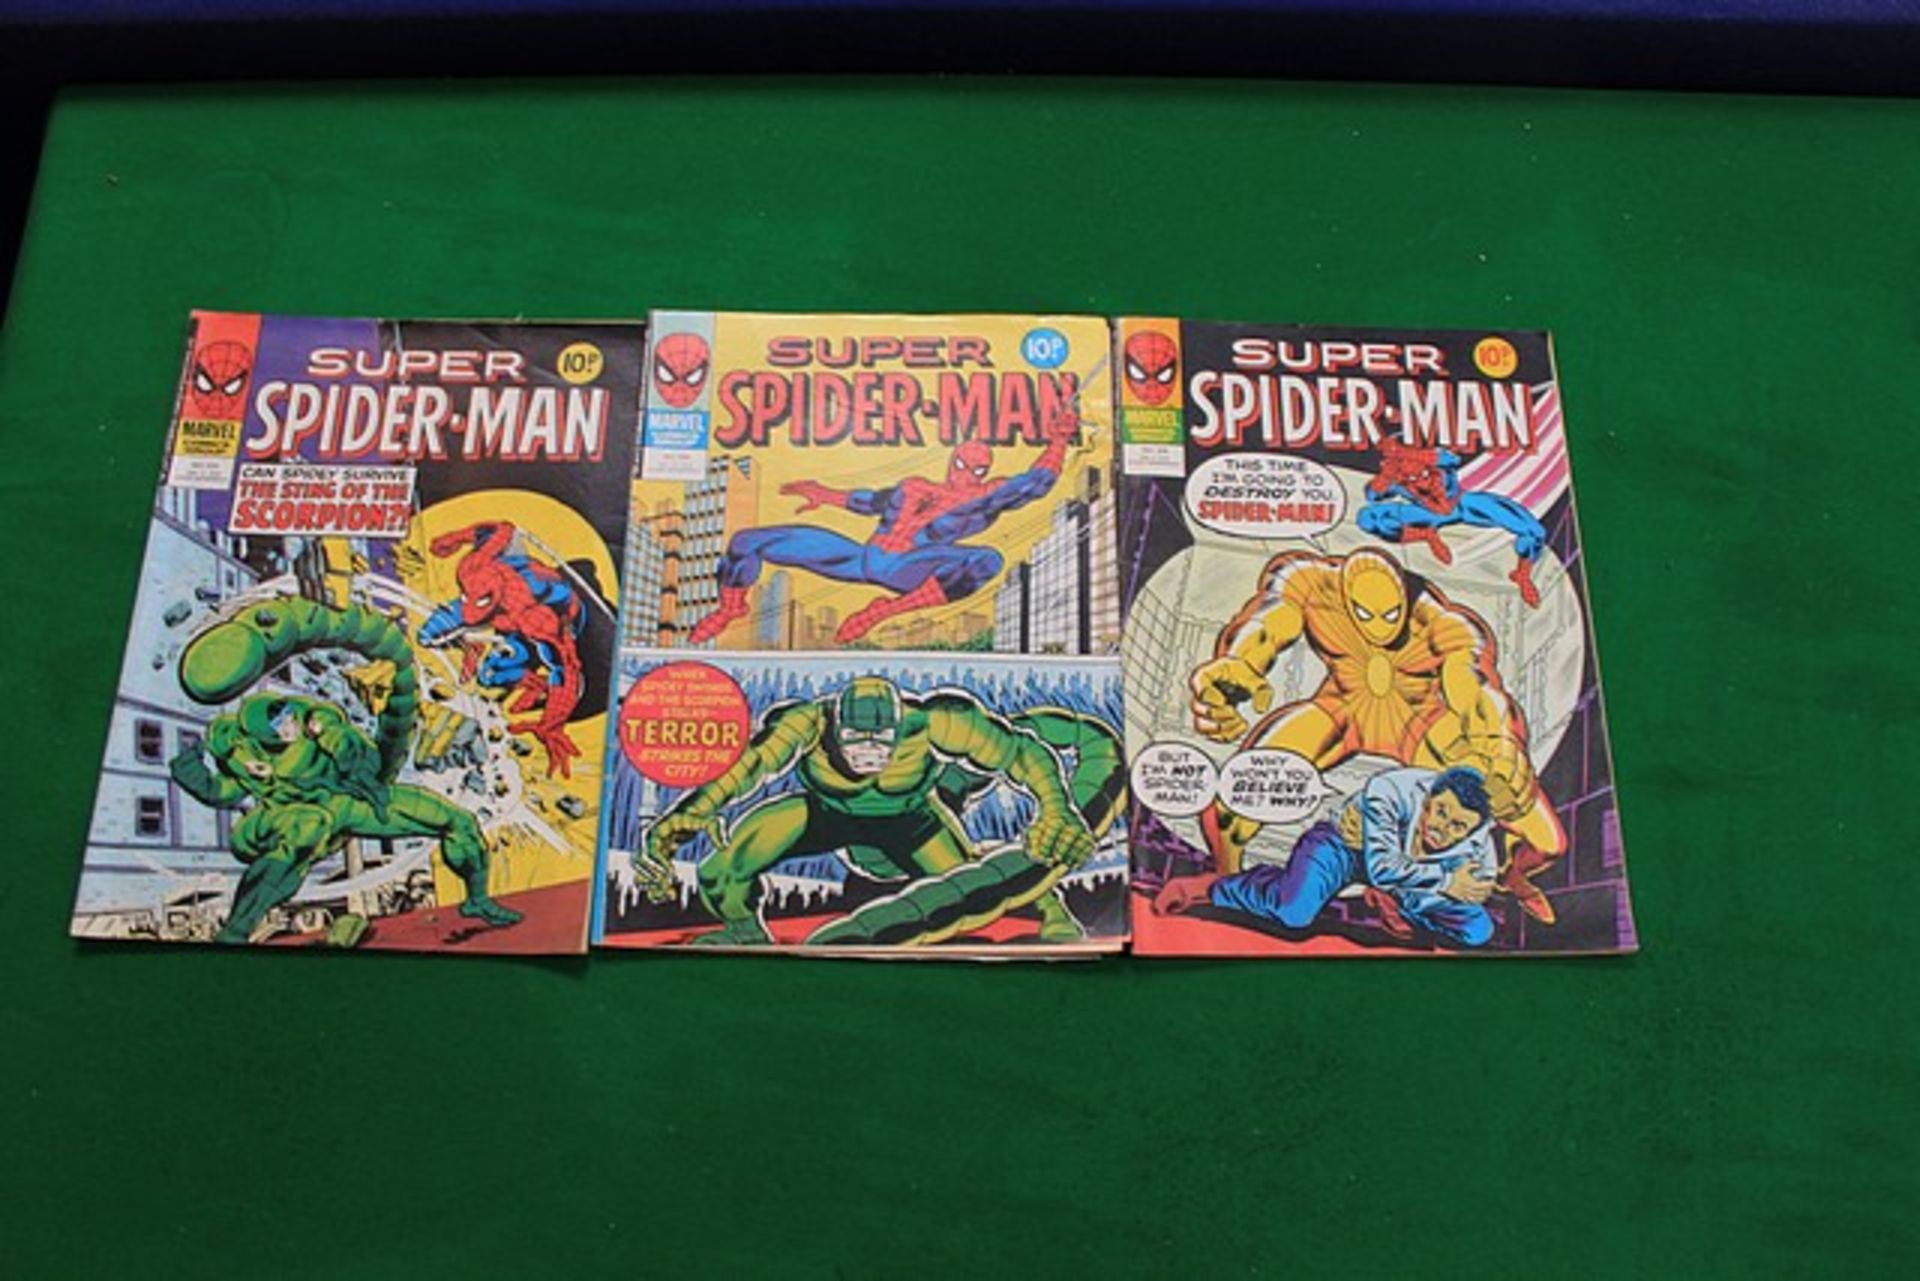 3 X Marvel Comics Comprising Spider-Man No 308, W/E Jan 3 1980 #Spider-Man No 309, W/E Jan 10, 1979#